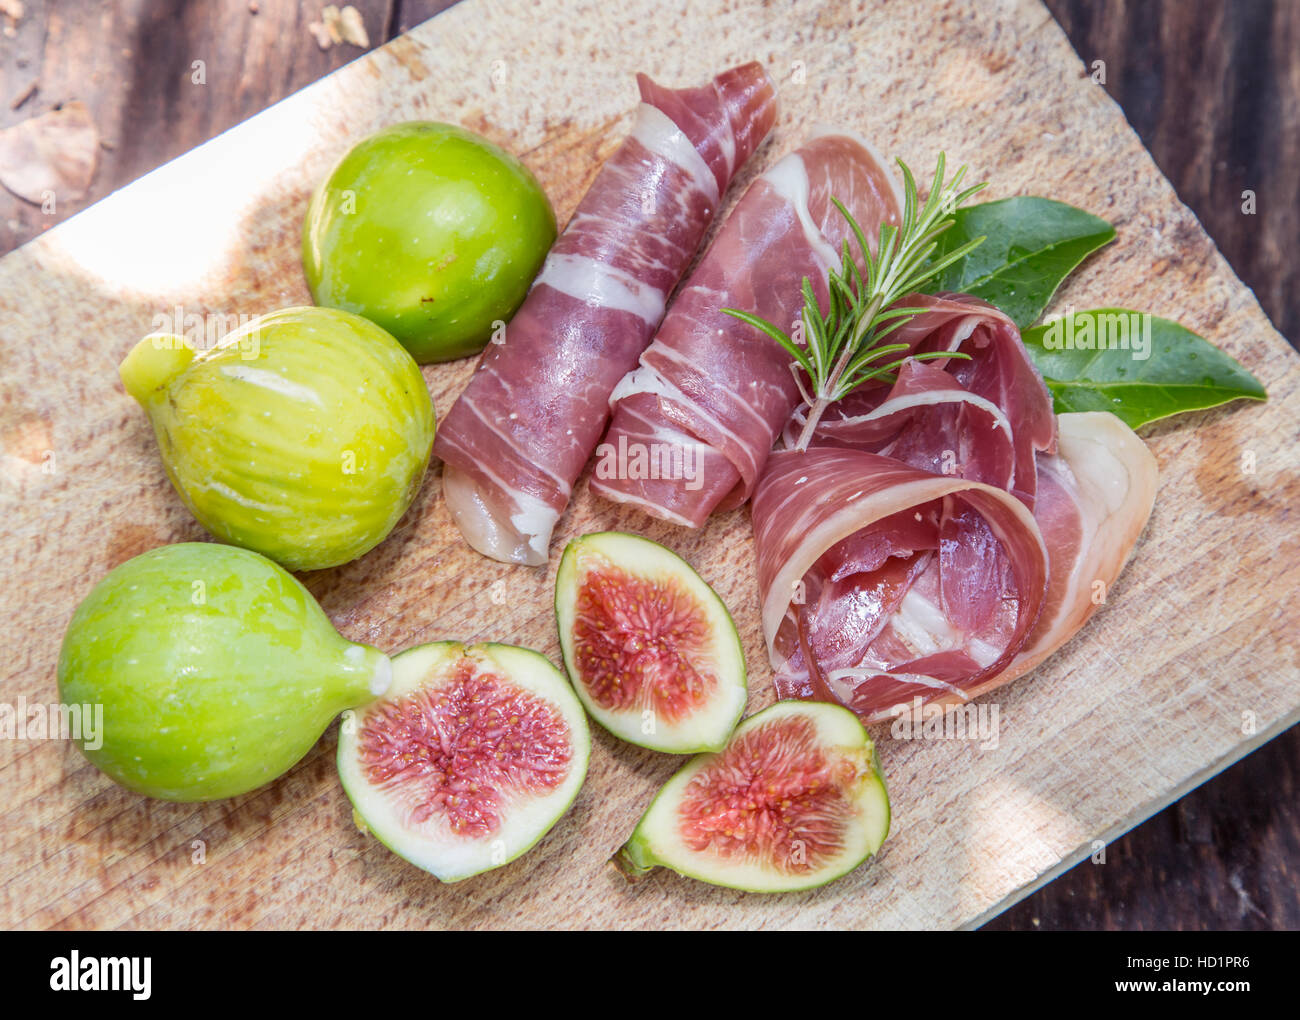 Fruits mûrs fig et du bacon ou jambon. Nourriture pour accompagner la boisson. Banque D'Images